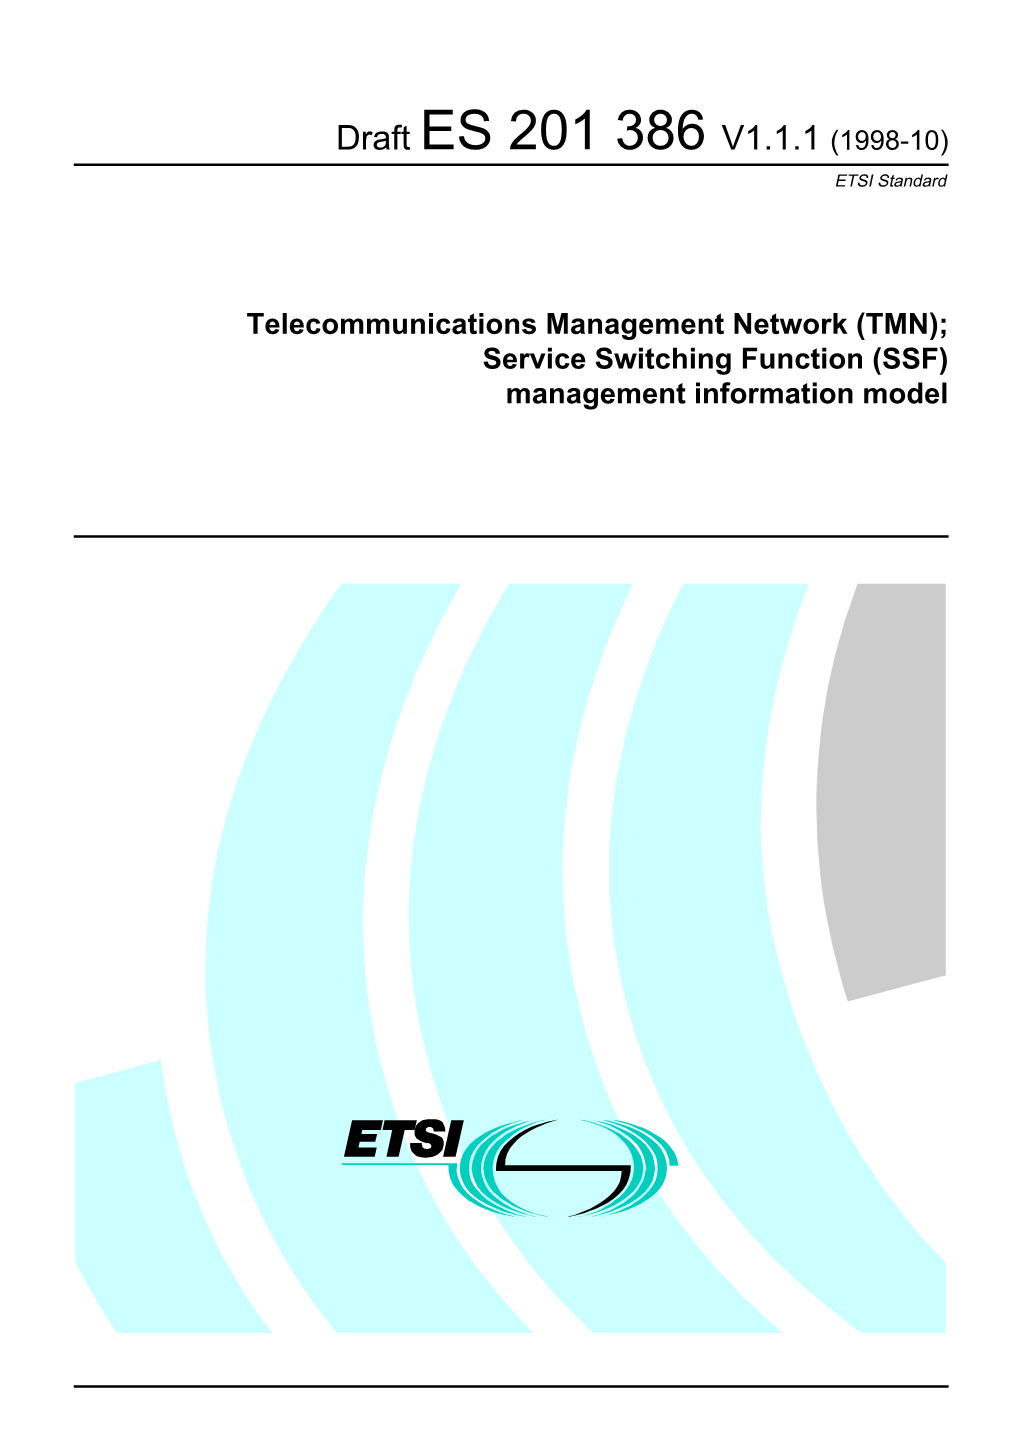 SSF) Management Information Model 2 Draft ES 201 386 V1.1.1 (1998-10)